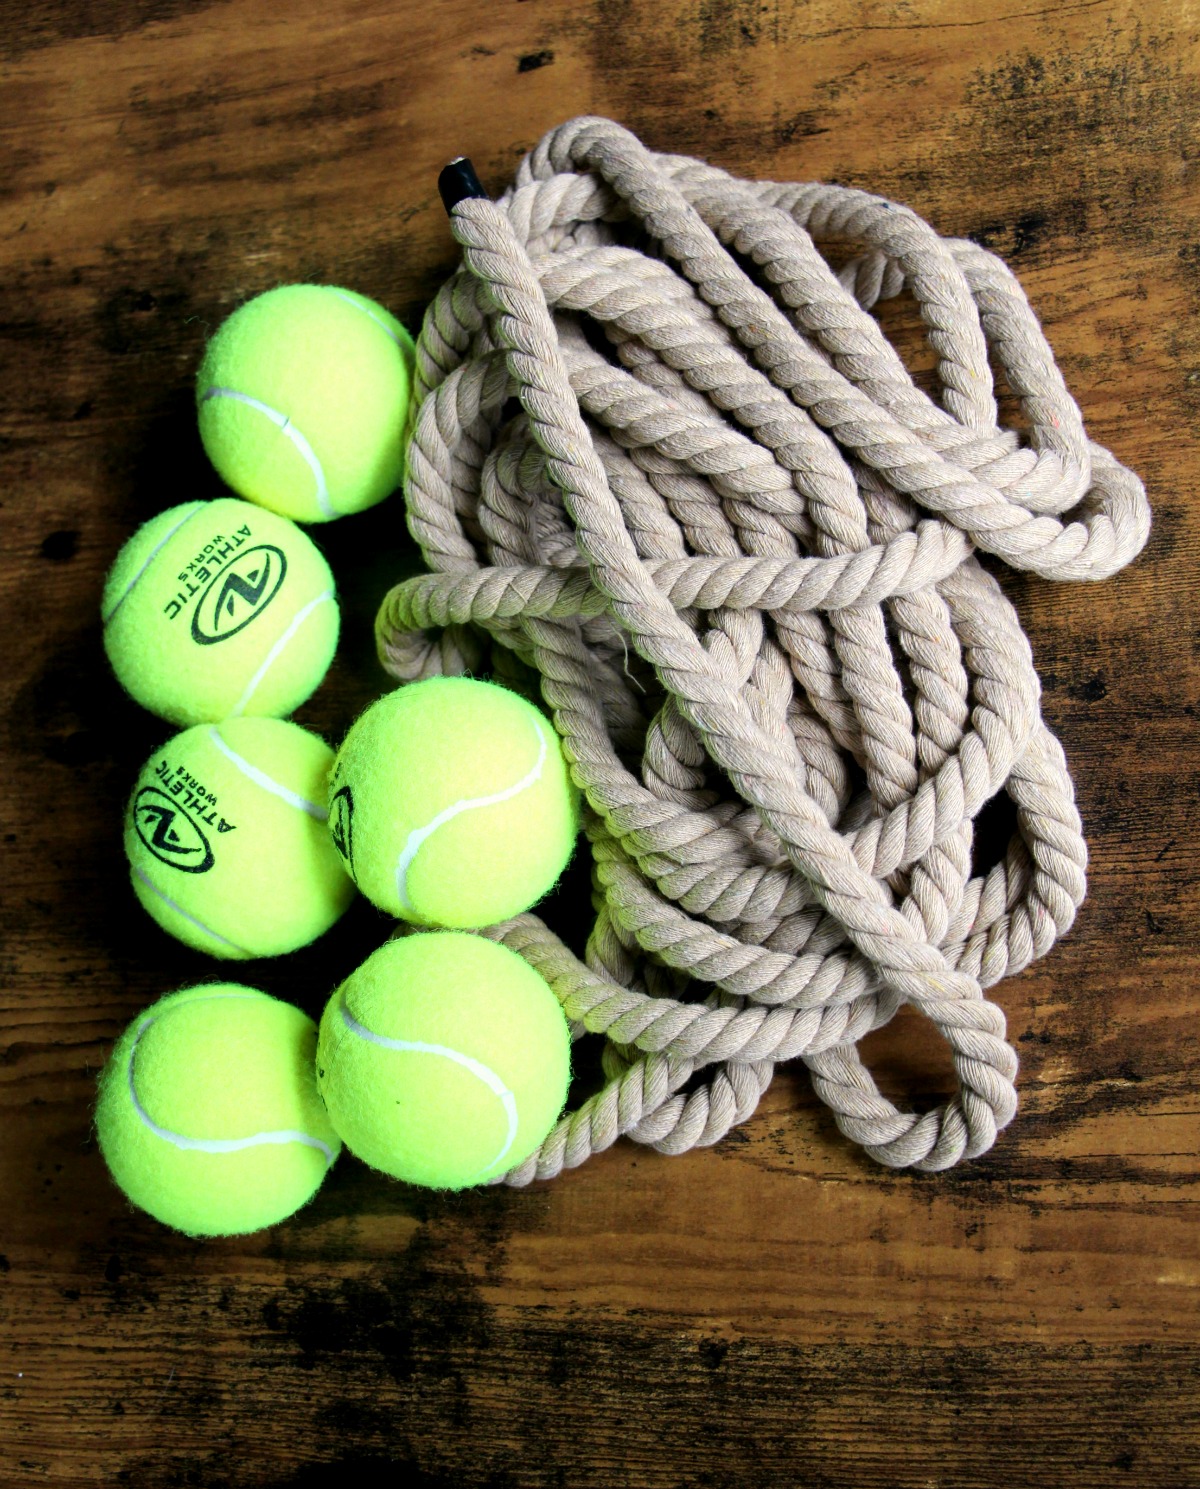 DIY Dog Rope Tennis Ball Toy